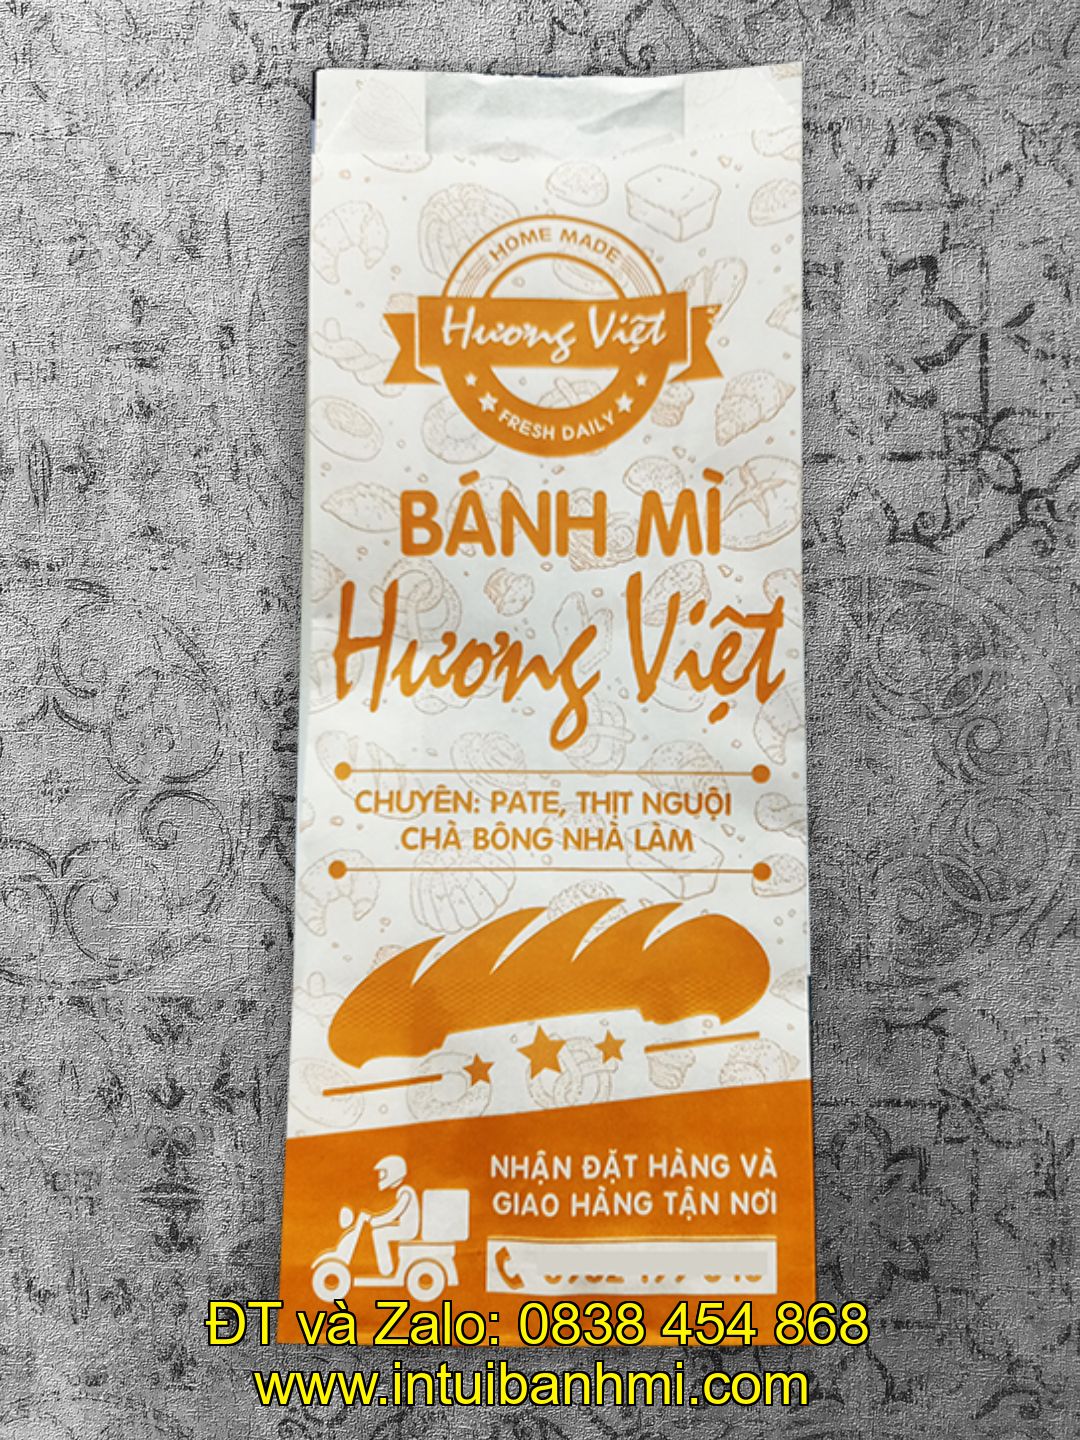 haugiang.intuibanhmi.com – giải quyết mọi khó khăn của bạn khi in ấn túi đựng bánh mì